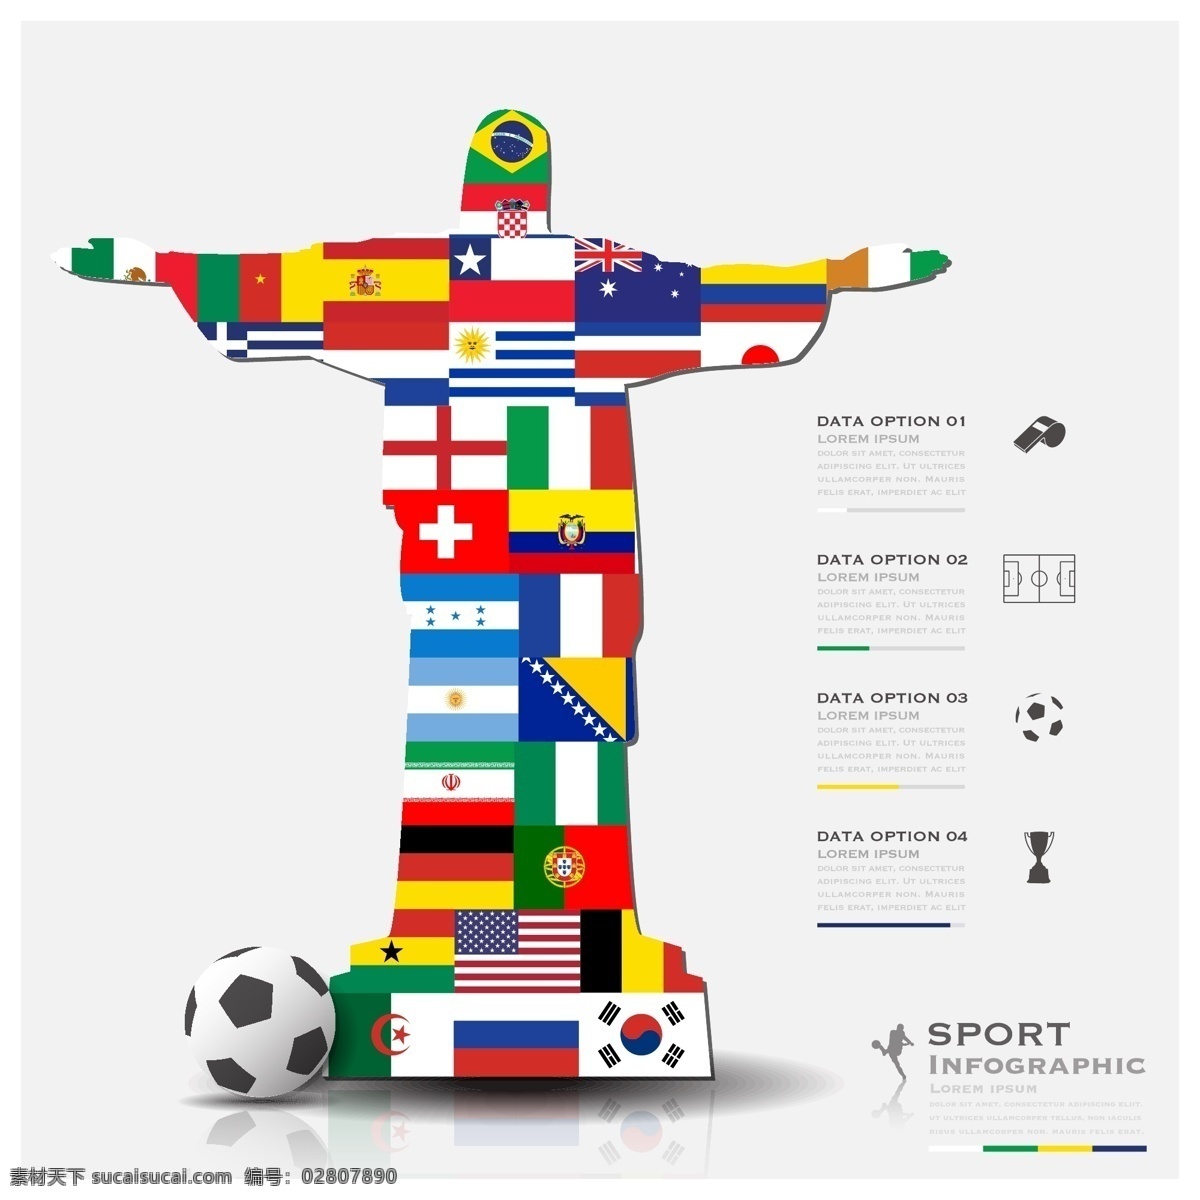 足球 国旗 神父 背景 模板下载 海报 世界杯 巴西 体育运动 生活百科 矢量素材 白色